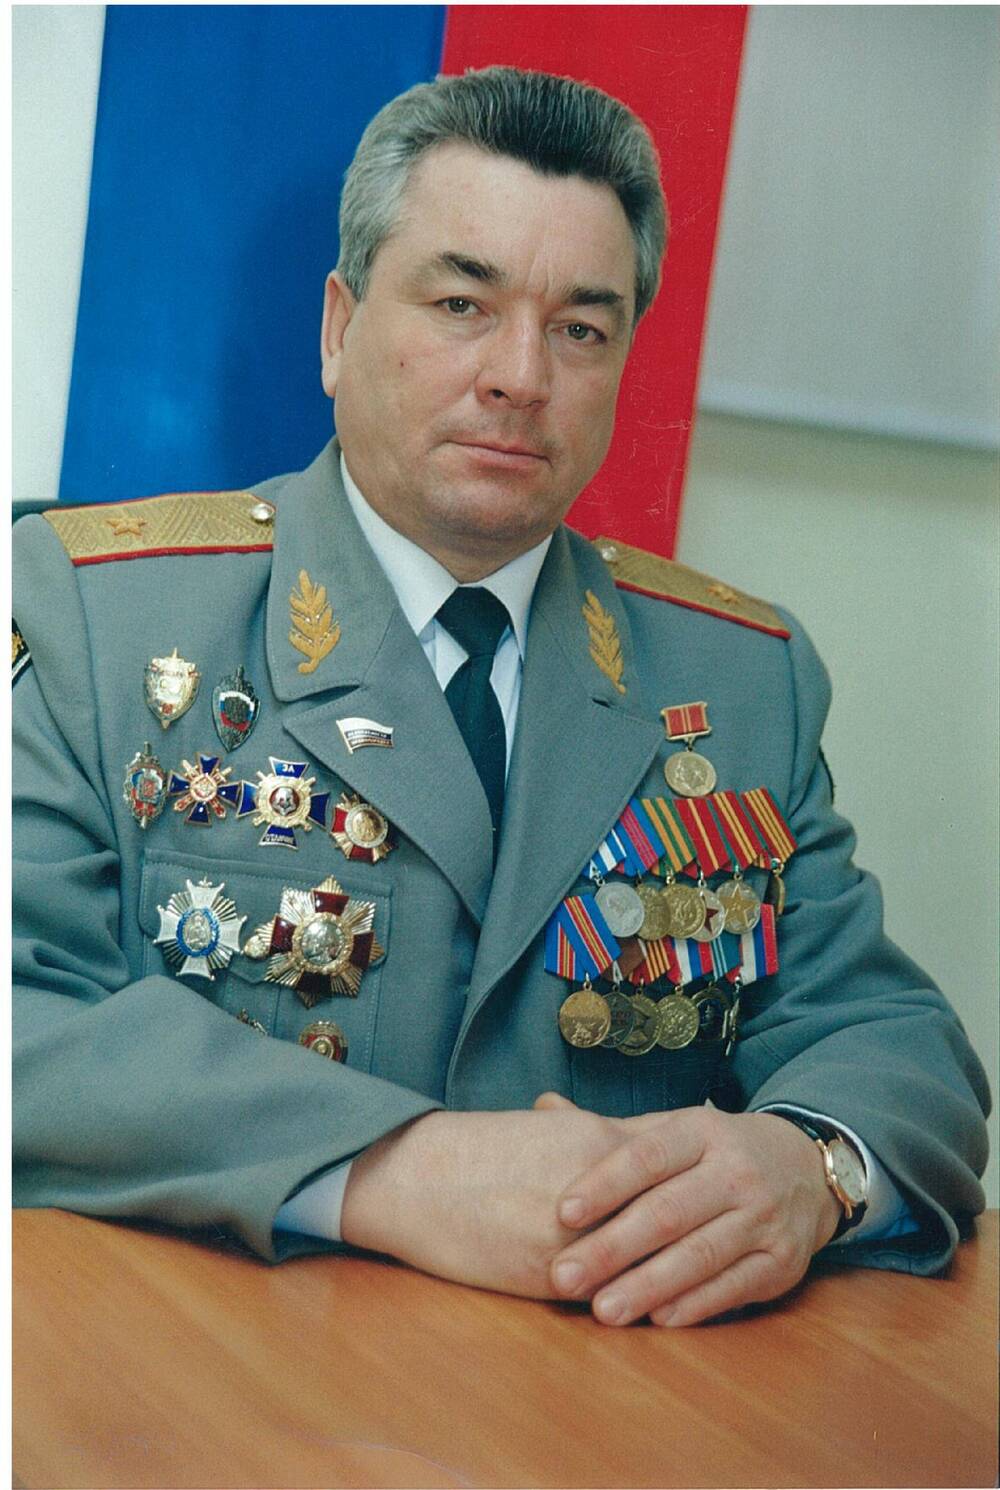 Фото цветное. Генерал-майор милиции Вальков Владимир Алексеевич, начальник ГУВД Алтайского края в 1998-2005 годах.